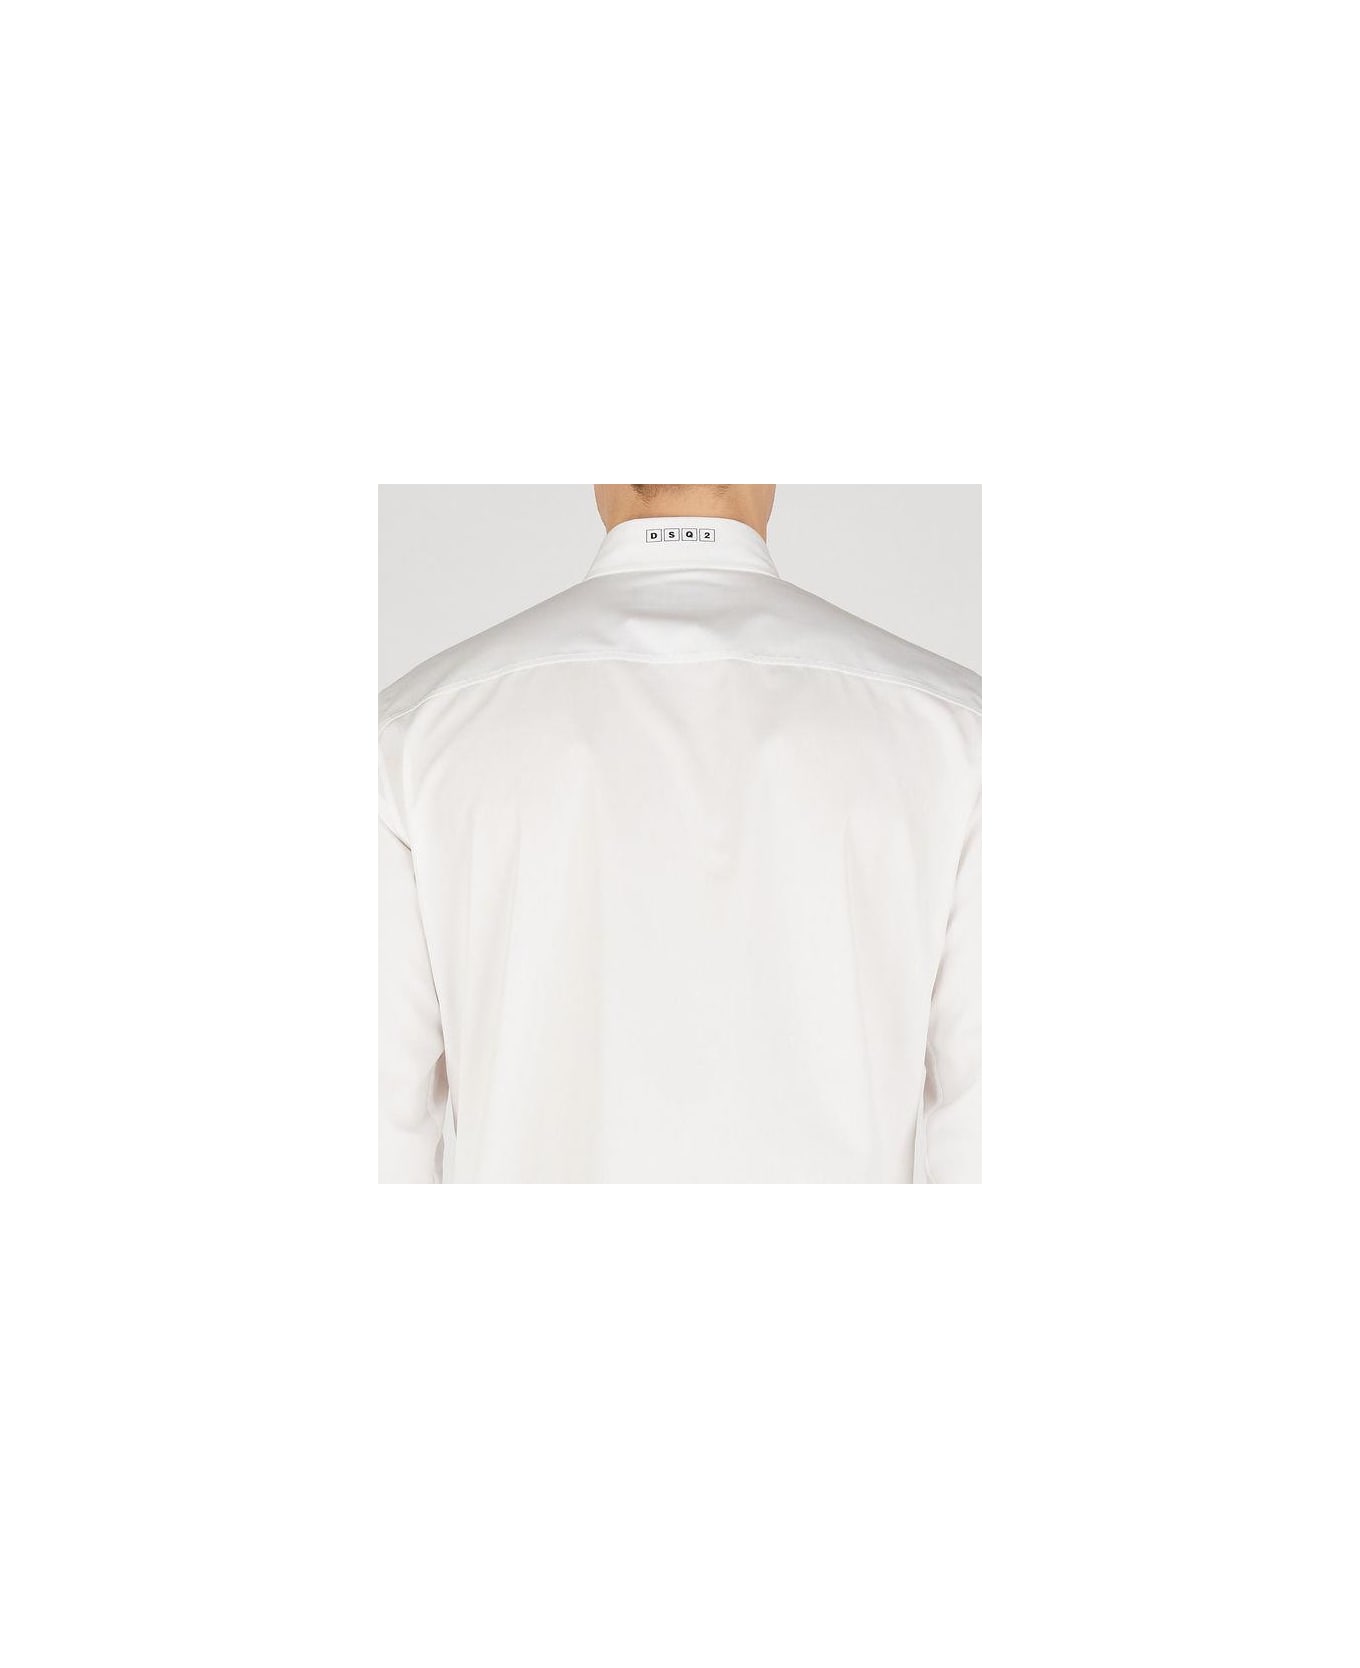 Dsquared2 Shirts - White